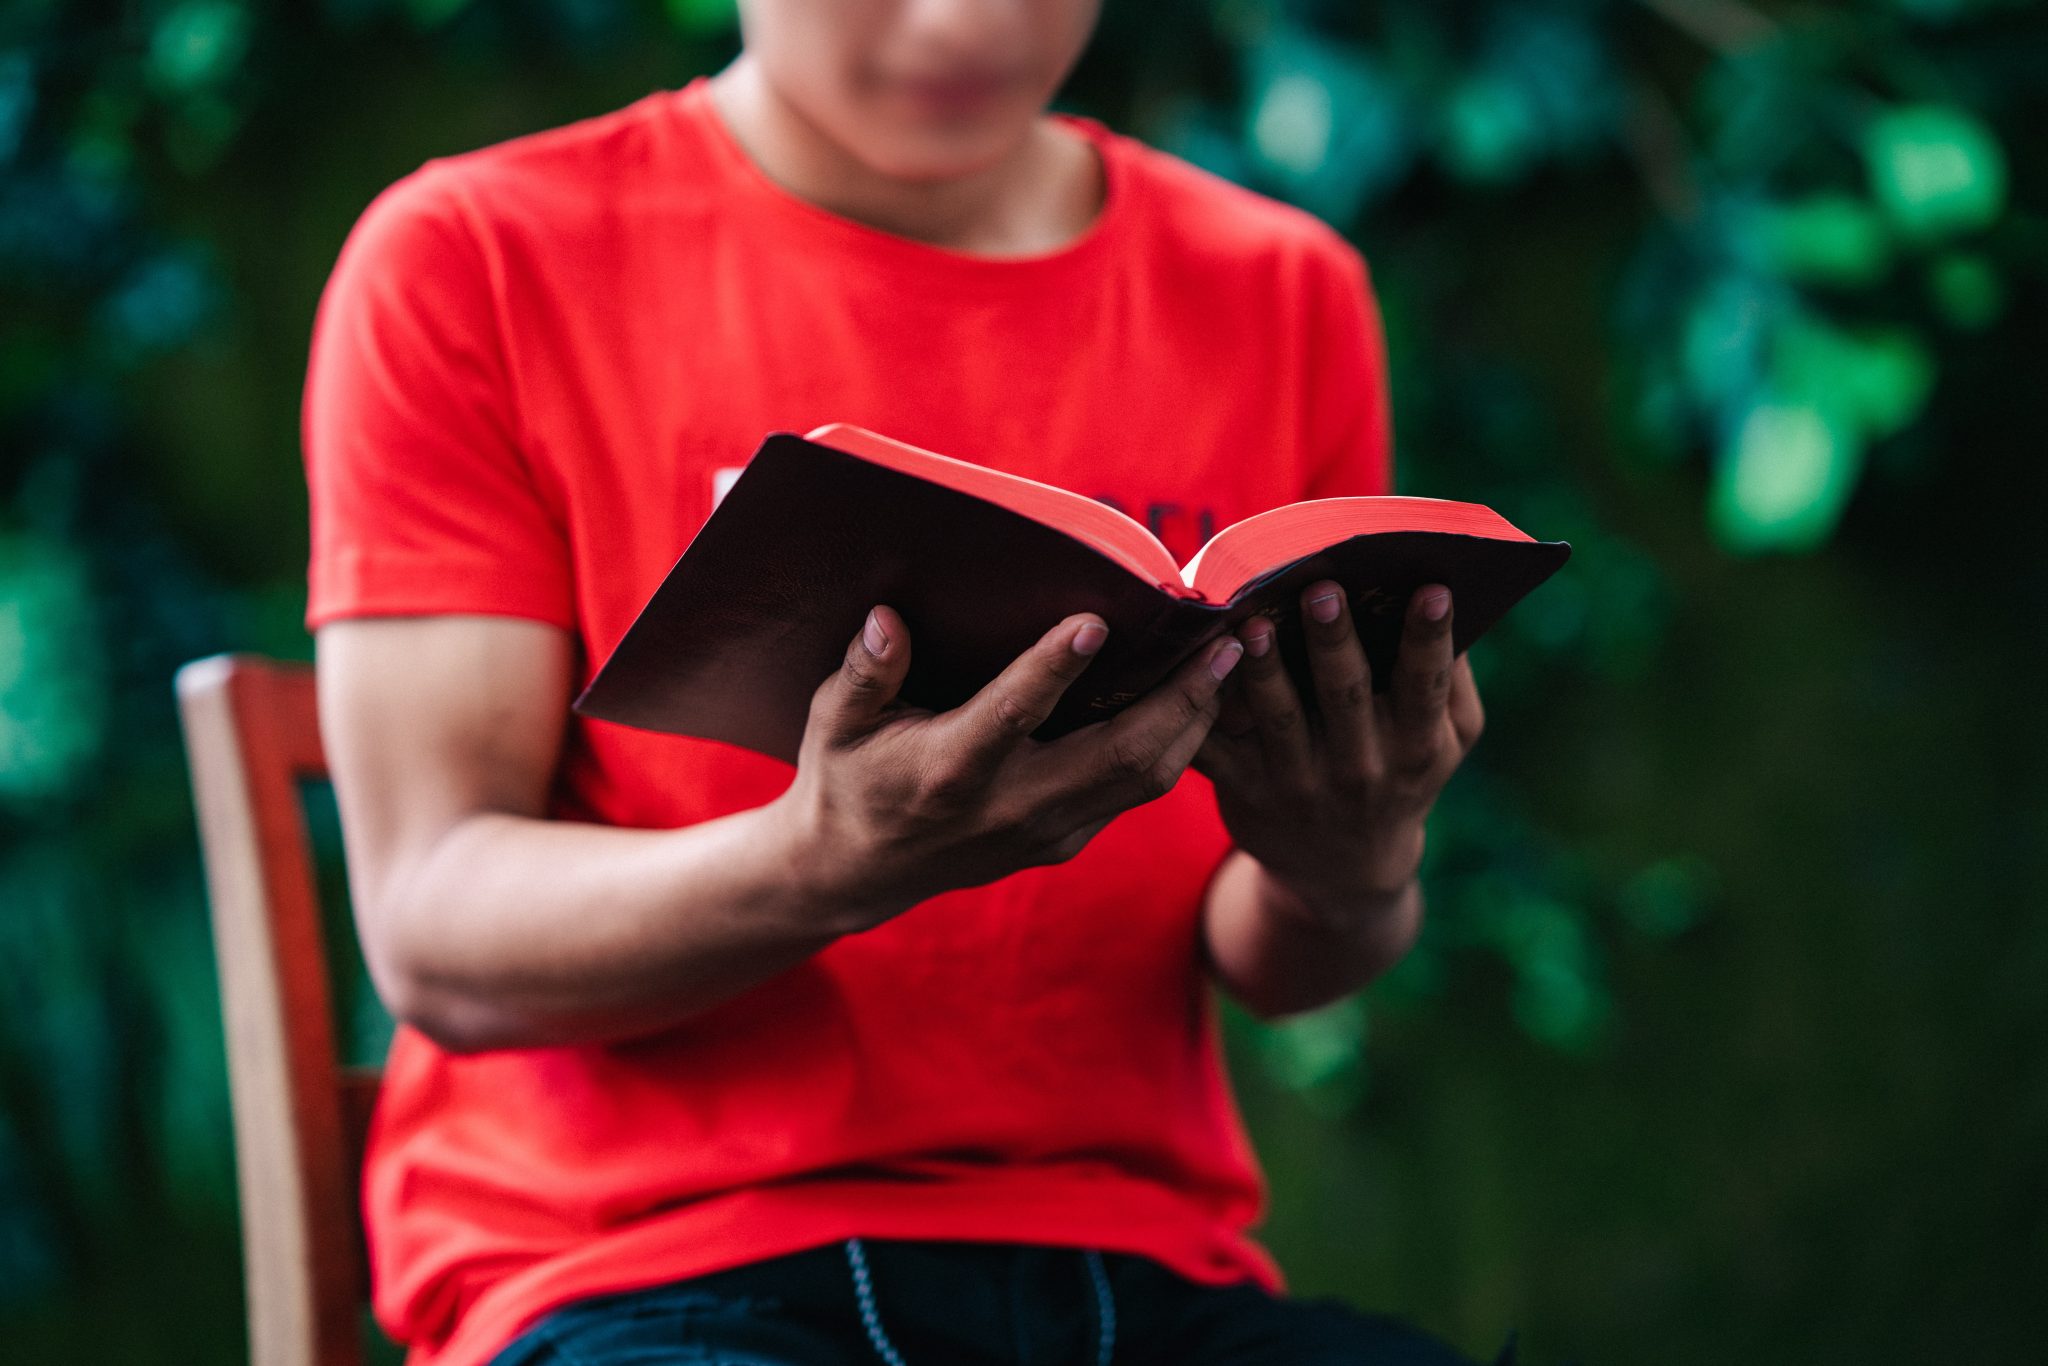 Nuori mies istuu ulkona ja lukee Raamattua. Hänen Raamattunsa on musta, punaisella reunuksella. Hänellä on yllään punainen t-paita.